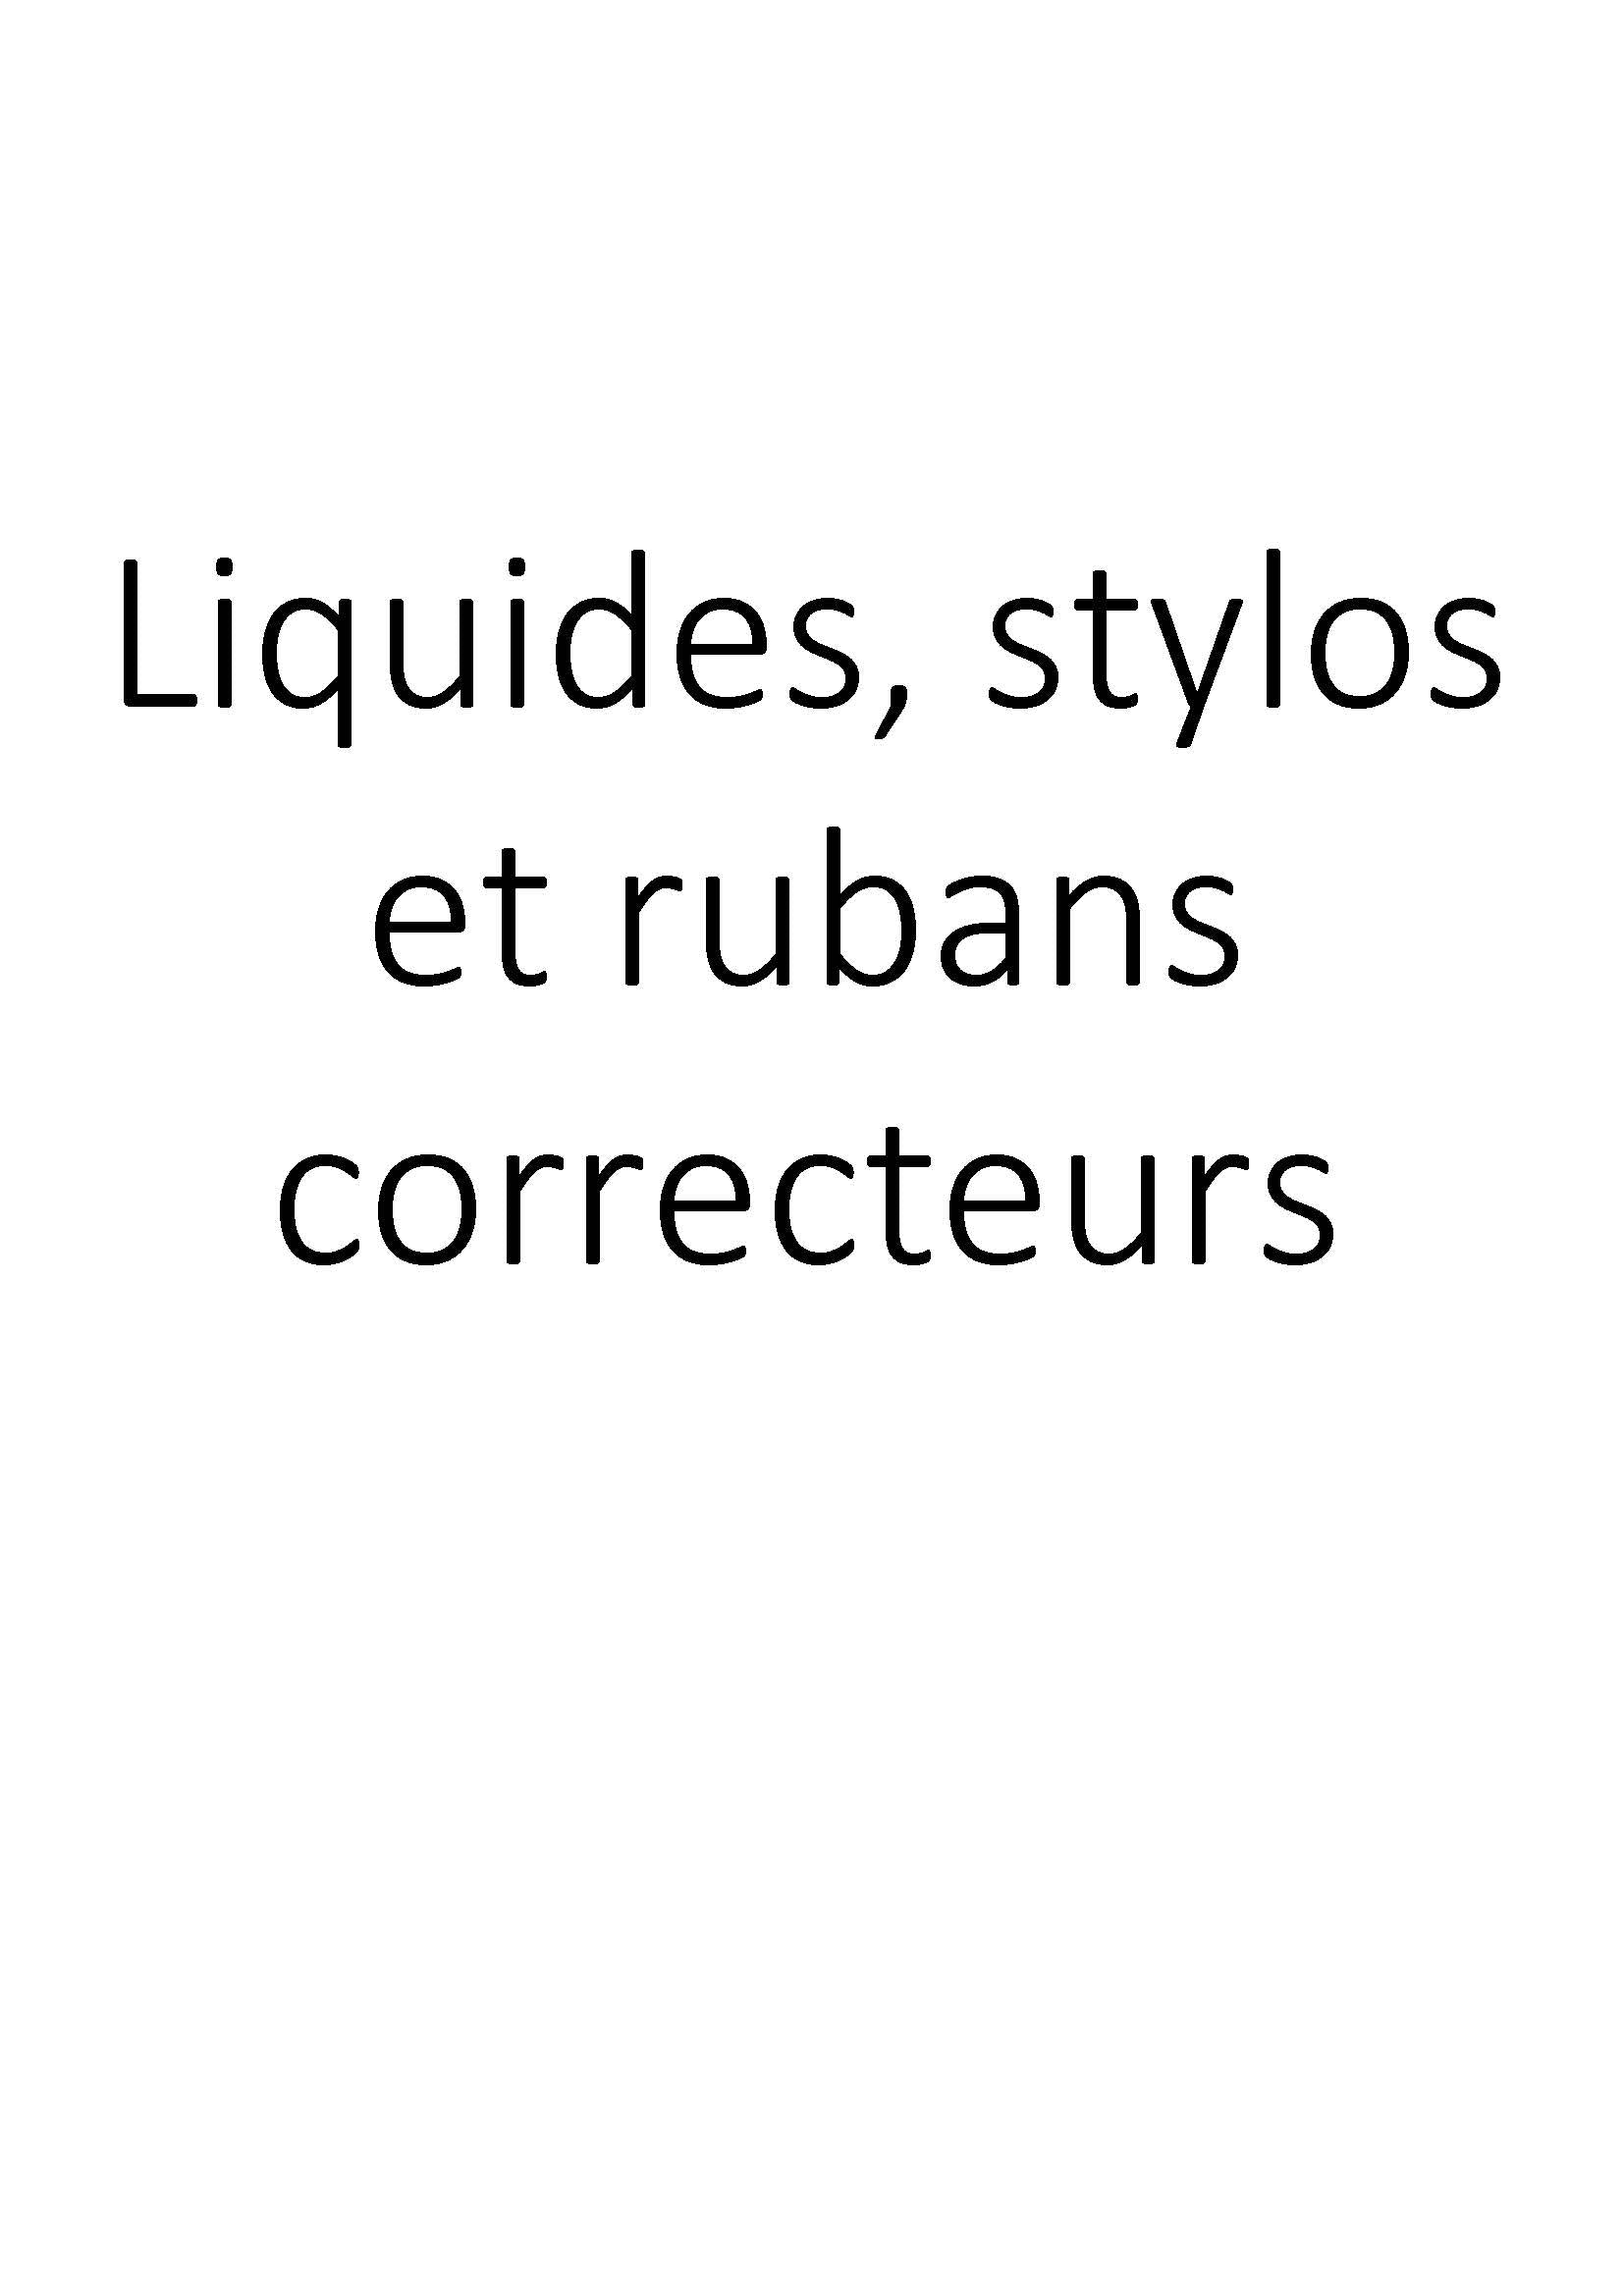 Liquides stylos et rubans correcteurs clicktofournisseur.com